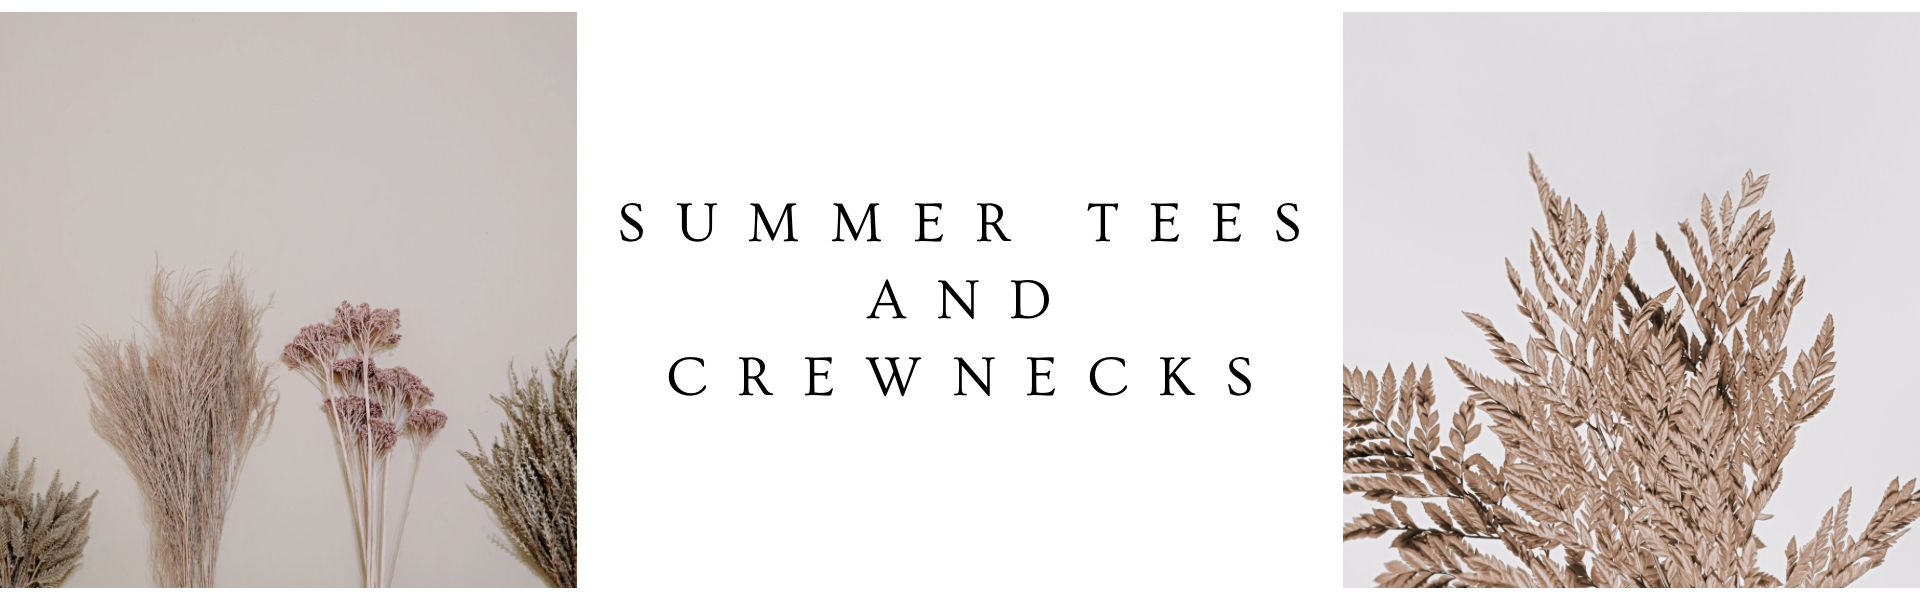 Summer Tees/Crews